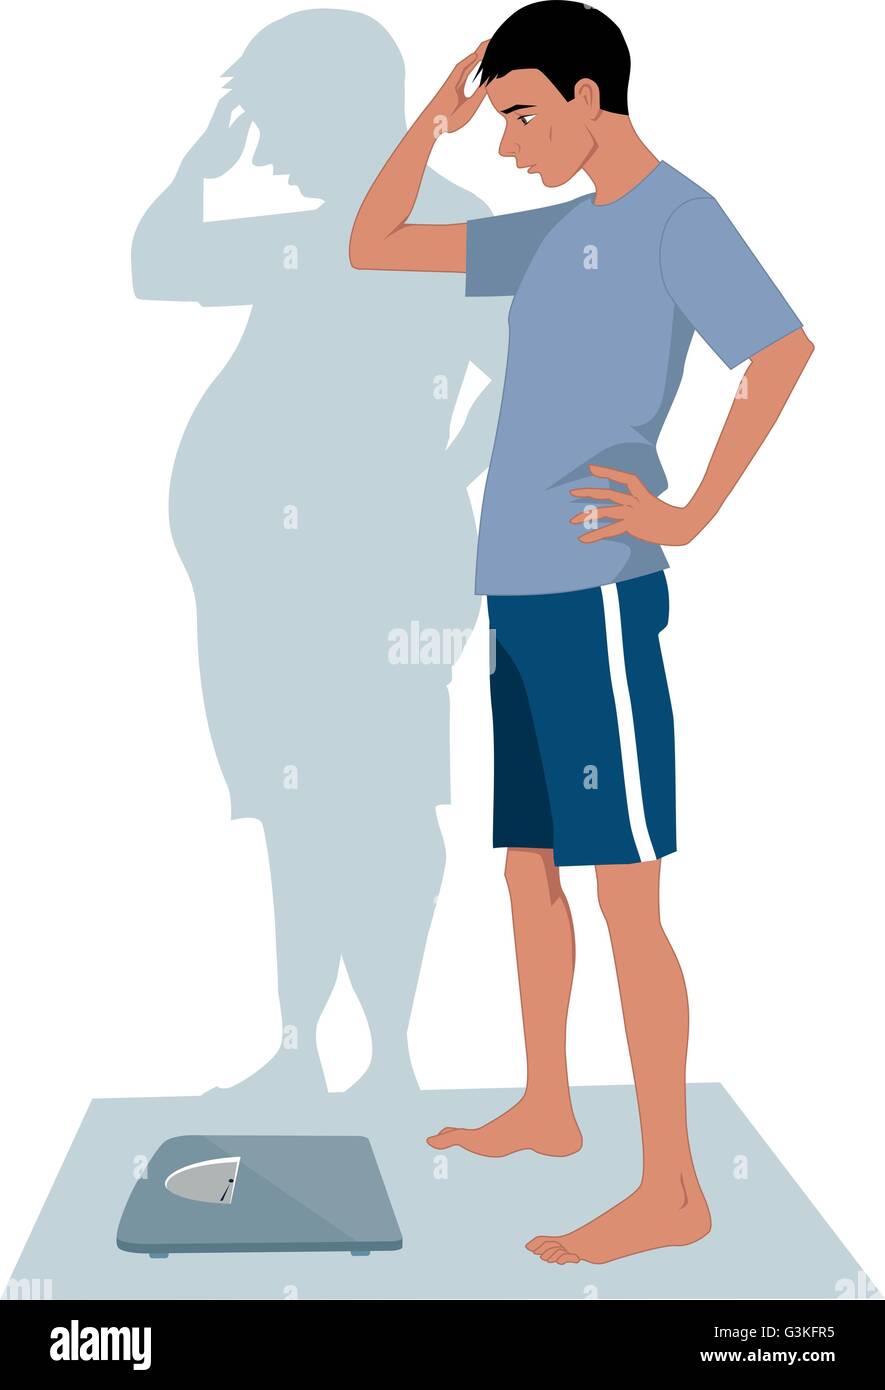 Anorexie masculine. Jeune homme maigre désireux de l'étape sur un pèse-personne à cause de son image corporelle déformée Illustration de Vecteur